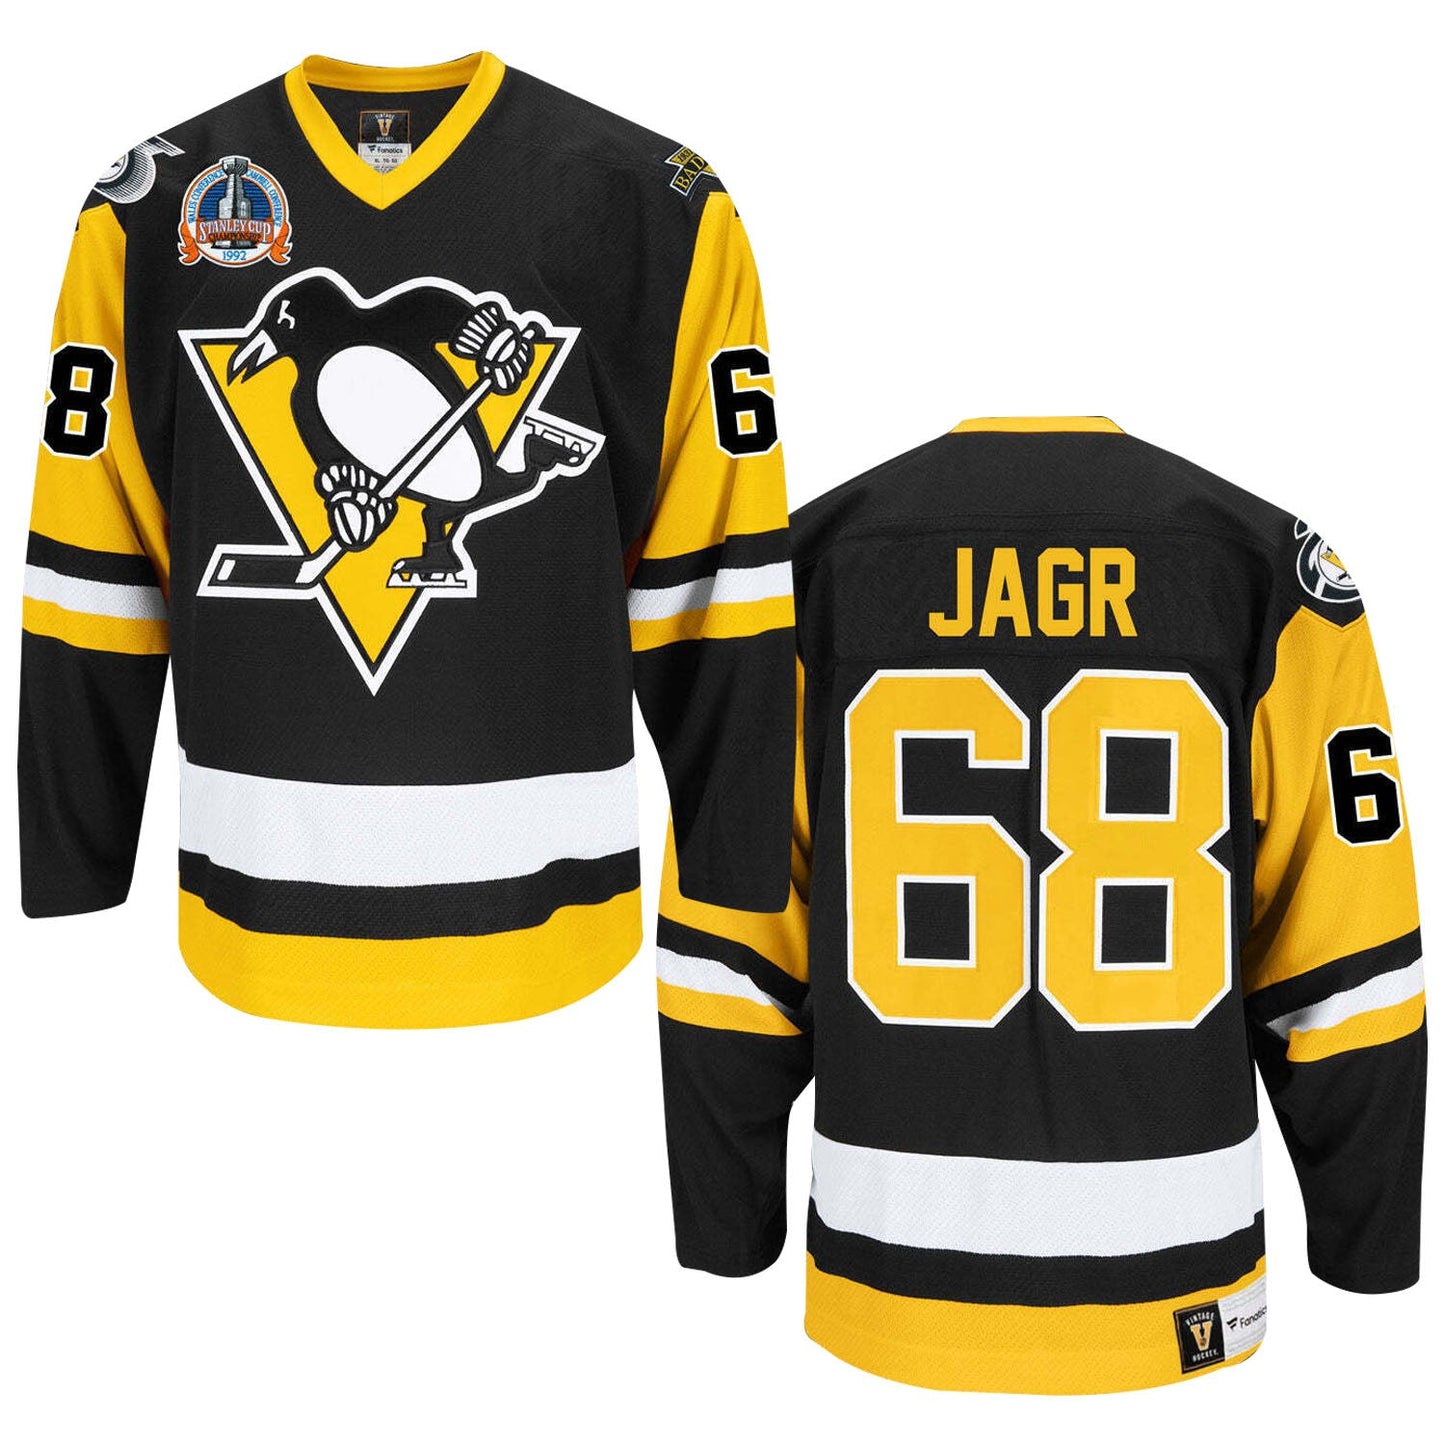 NHL Jaromir Jagr Pittsburgh Penguins 68 Jersey